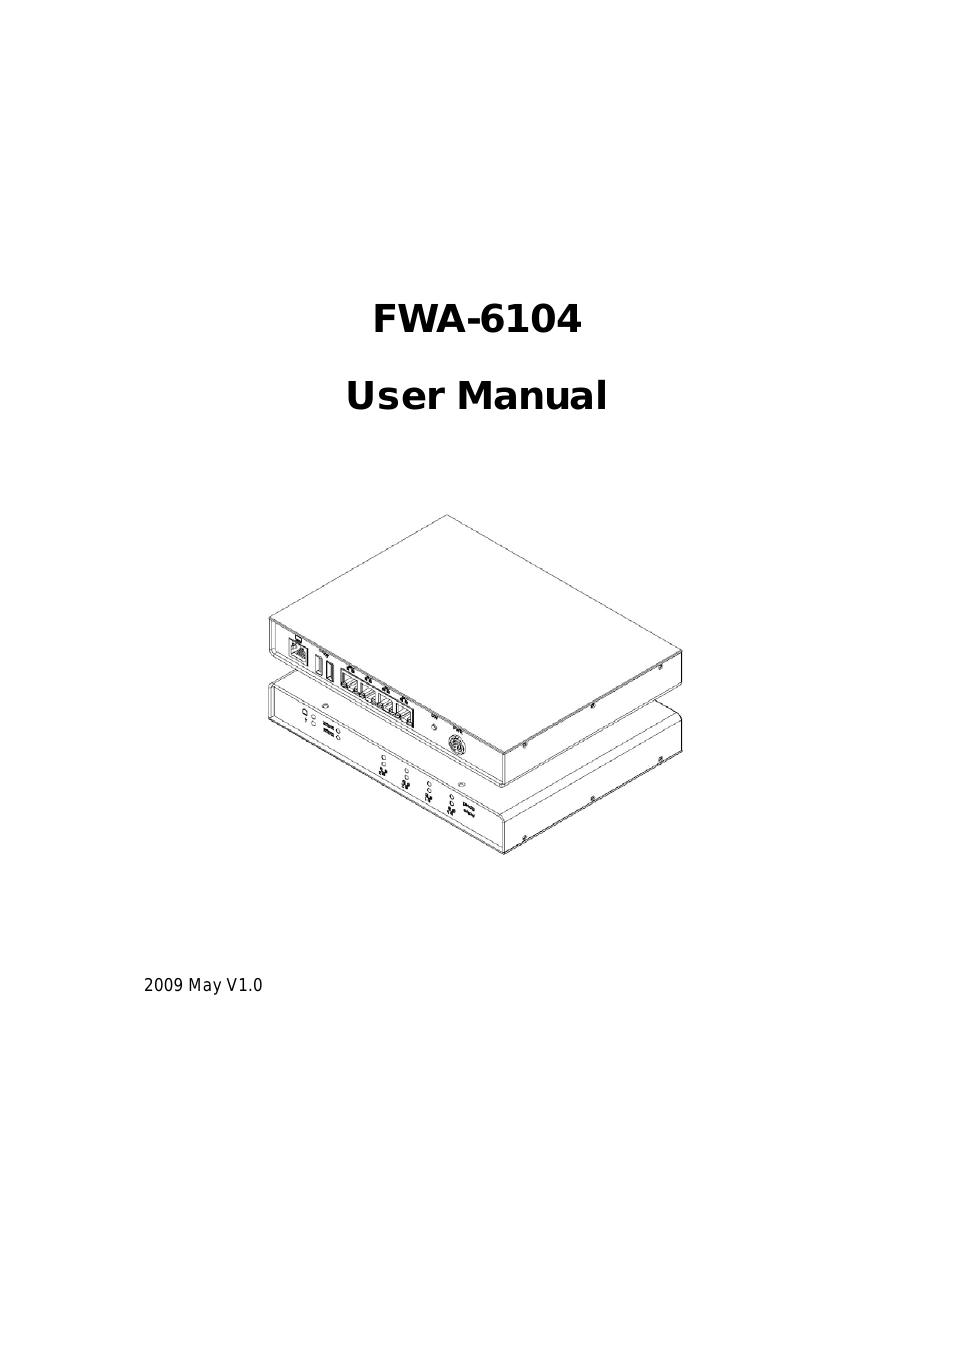 FWA6104